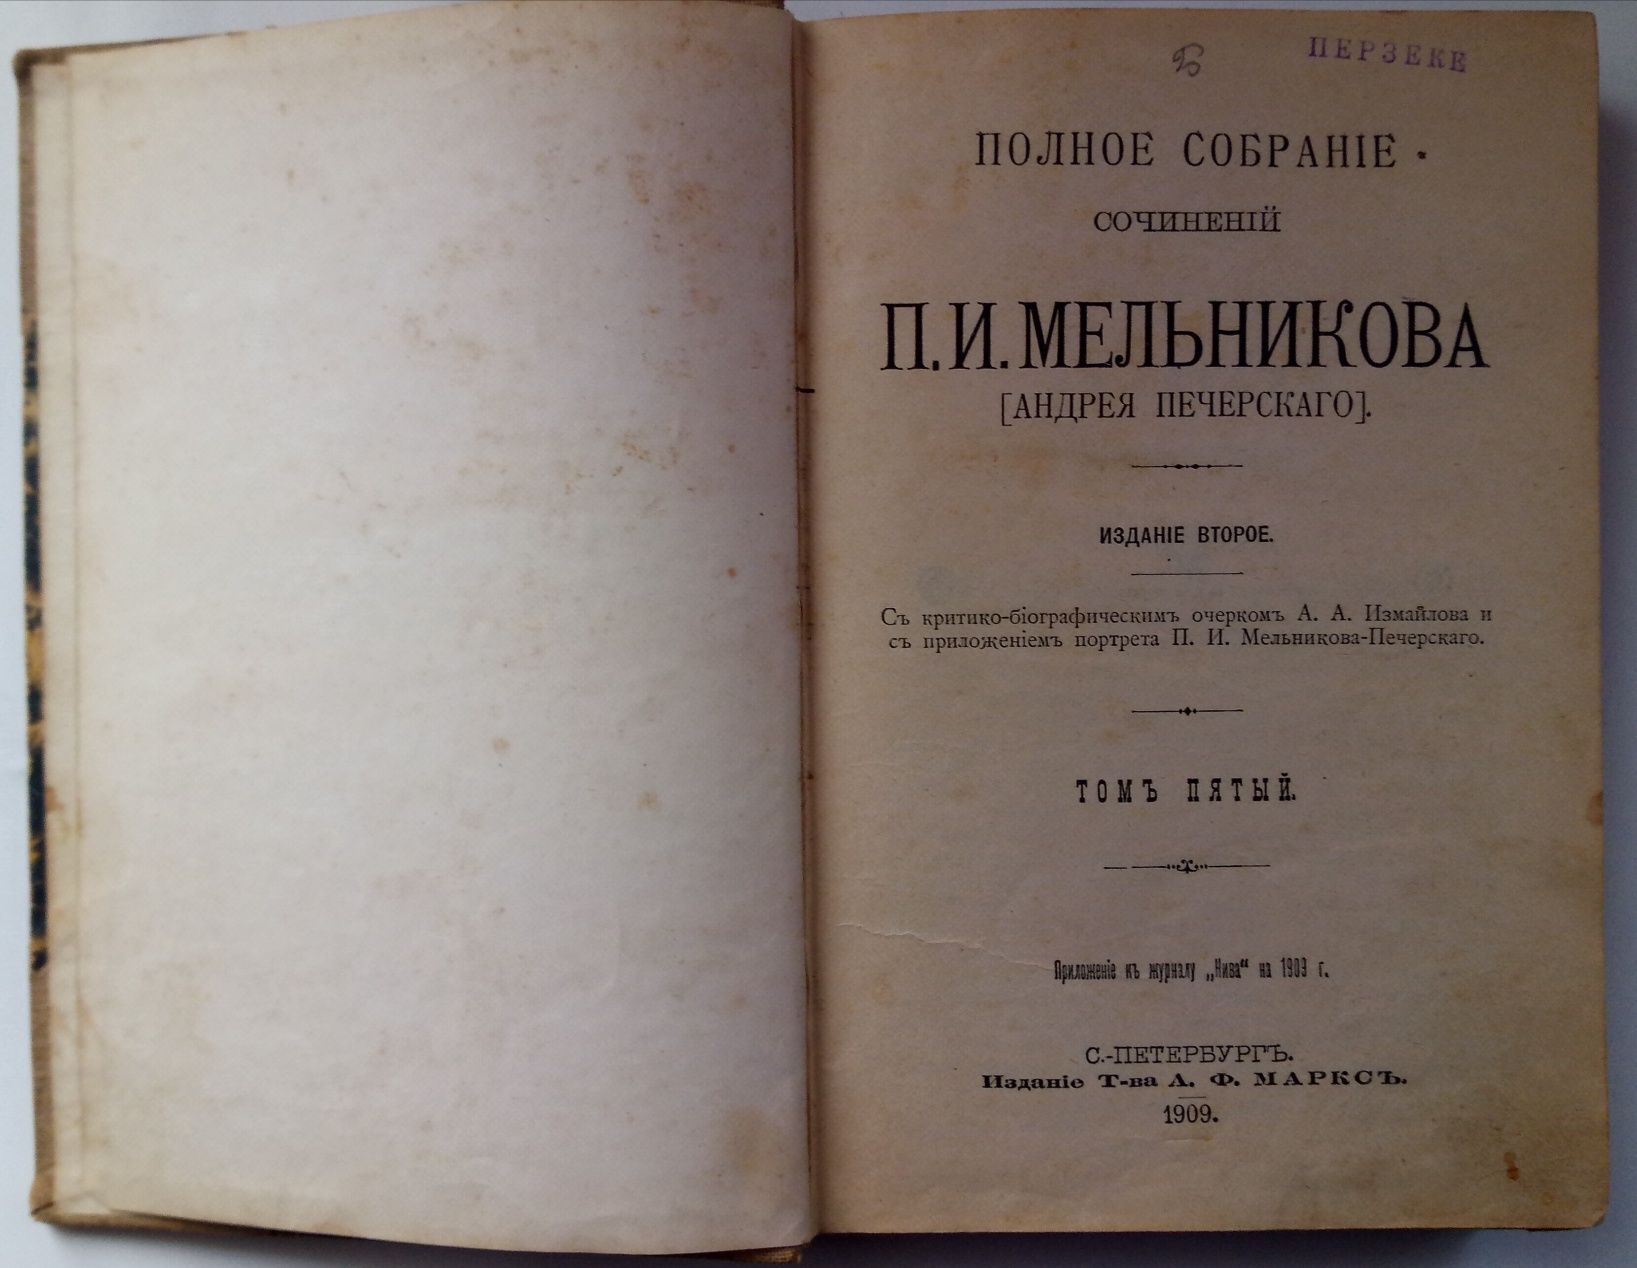 5 том из собрания сочинений П.И. Мельникова, 1909 г.